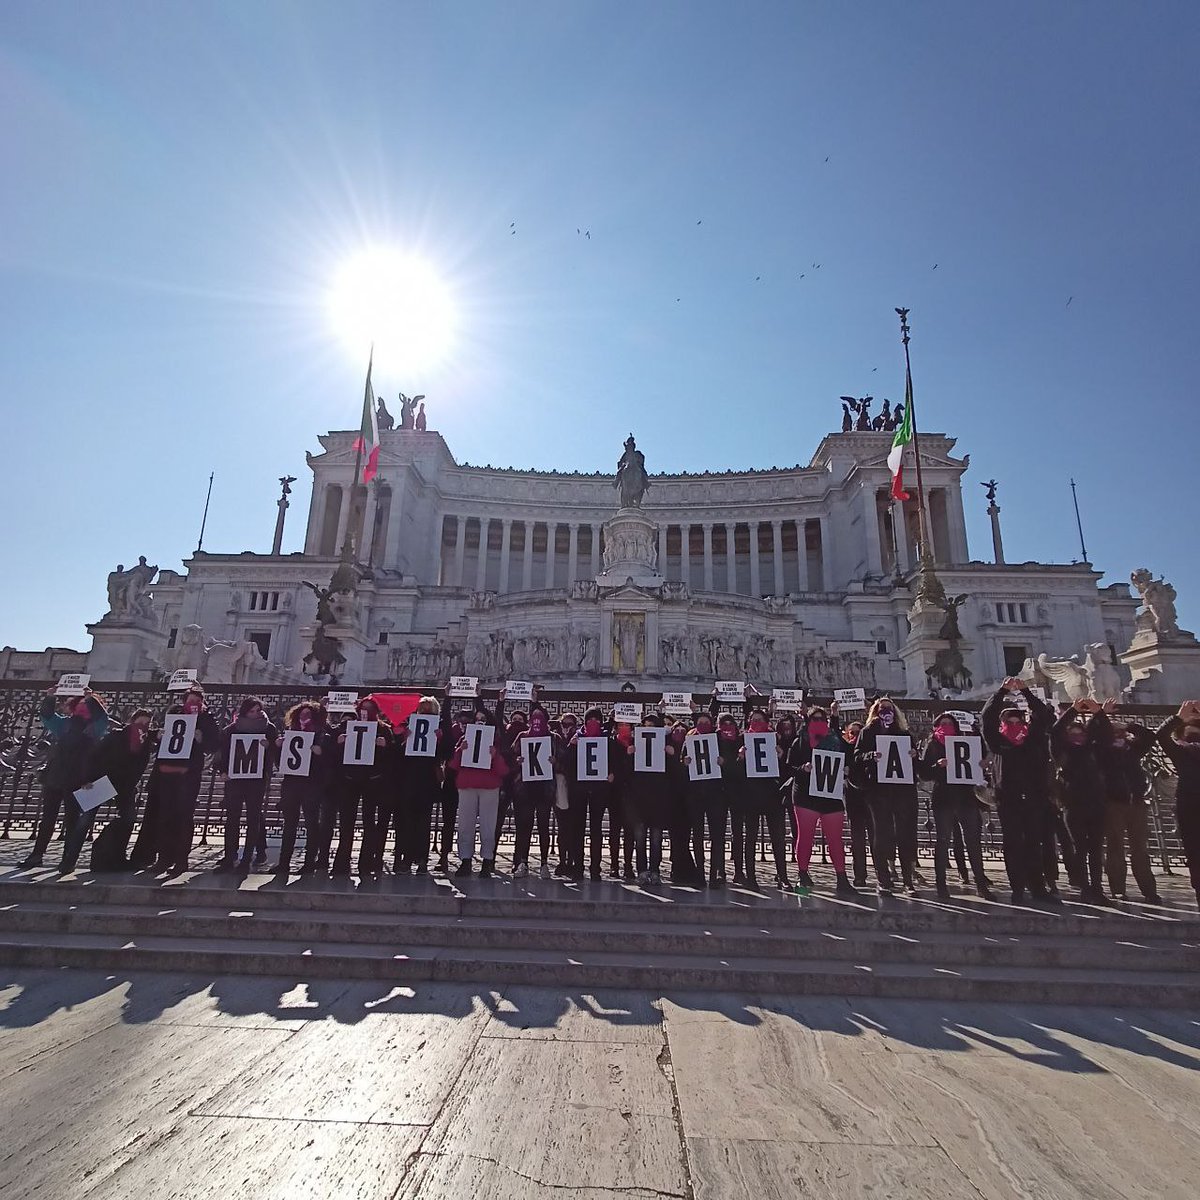 Il sole illumina Lotto Marzo
#StrikeTheWar 
#FeministAntiWarResistance 

Ci vediamo alle 17 in Piazza della Repubblica 
@nonunadimeno